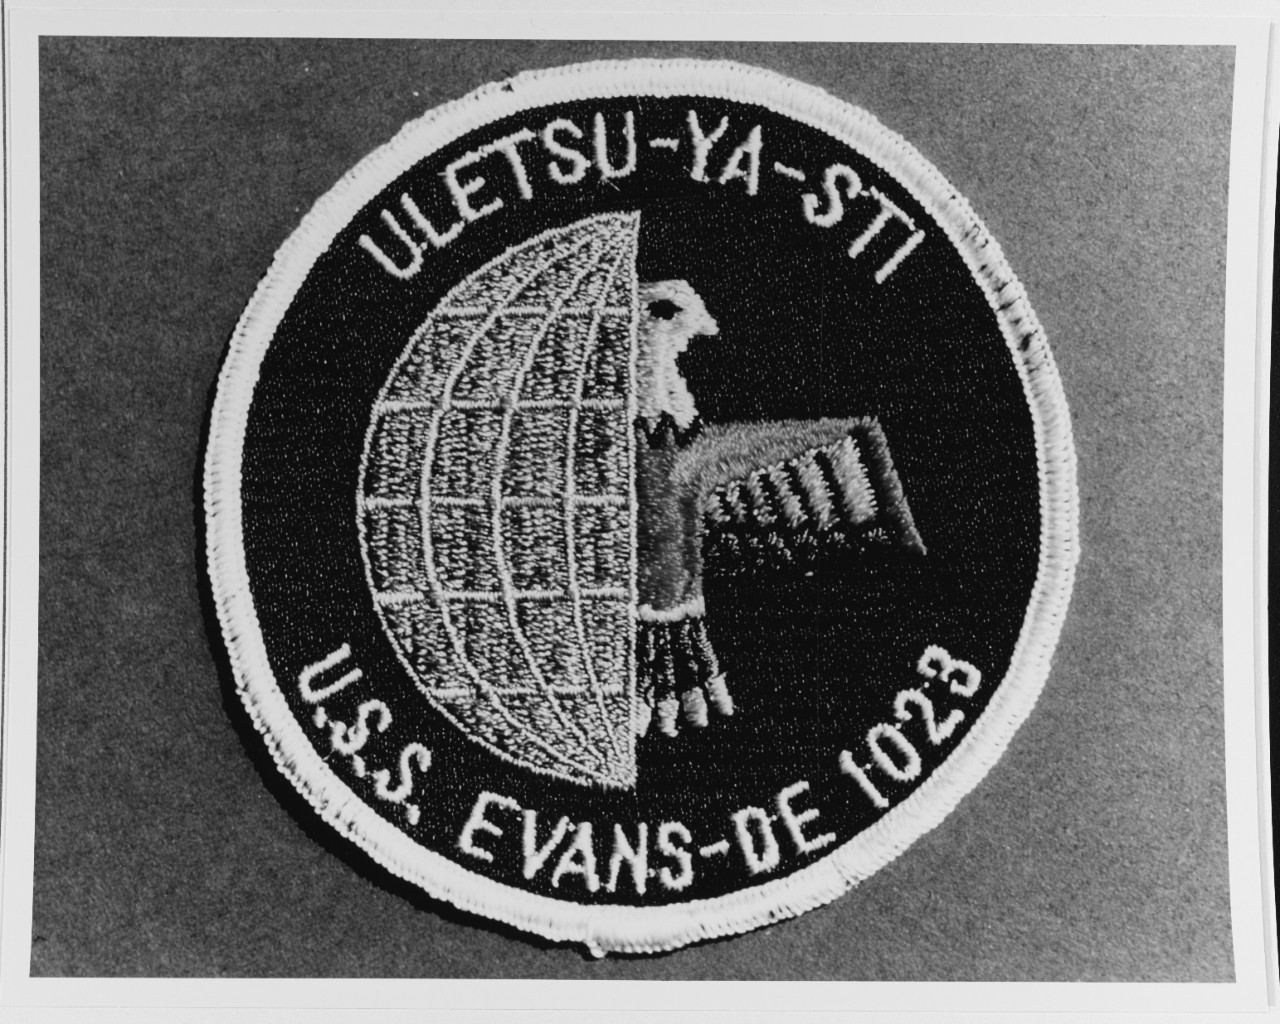 Insignia: USS EVANS (DE-1023)